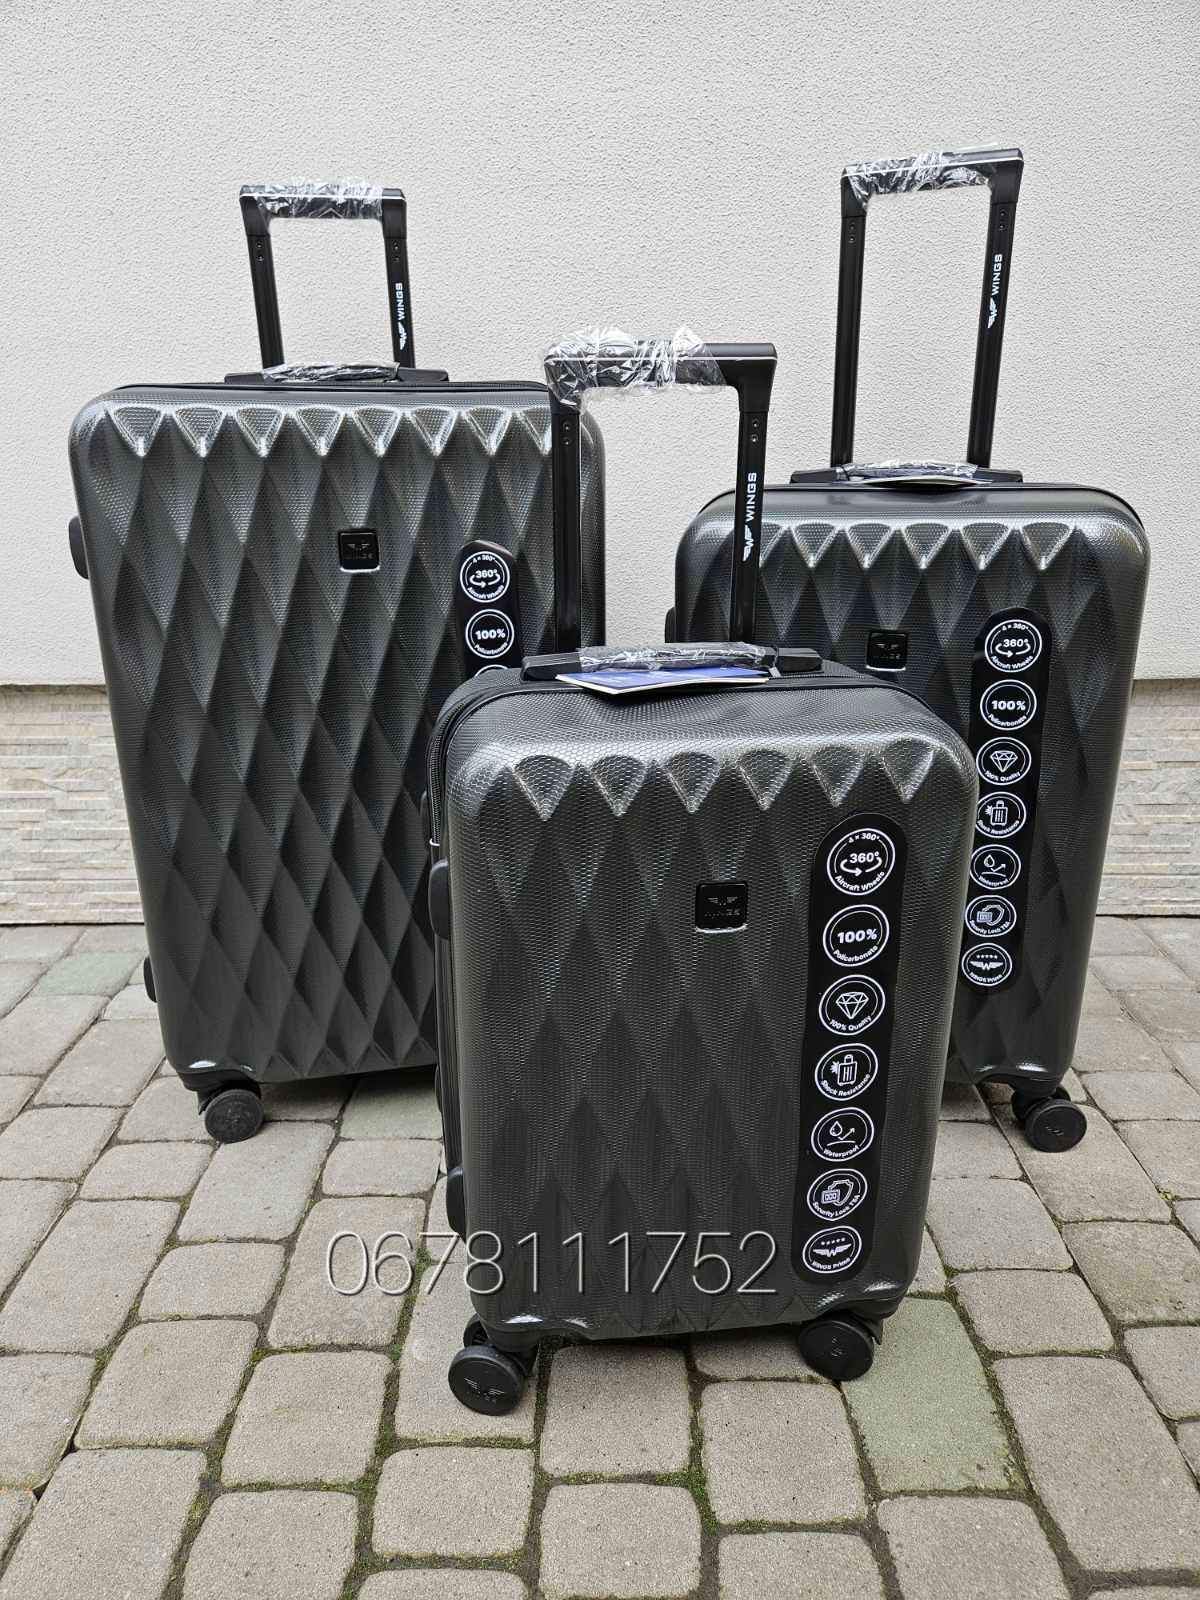 WINGS PC190 Польща комплект S/M/L валізи чемоданы сумки на колесах